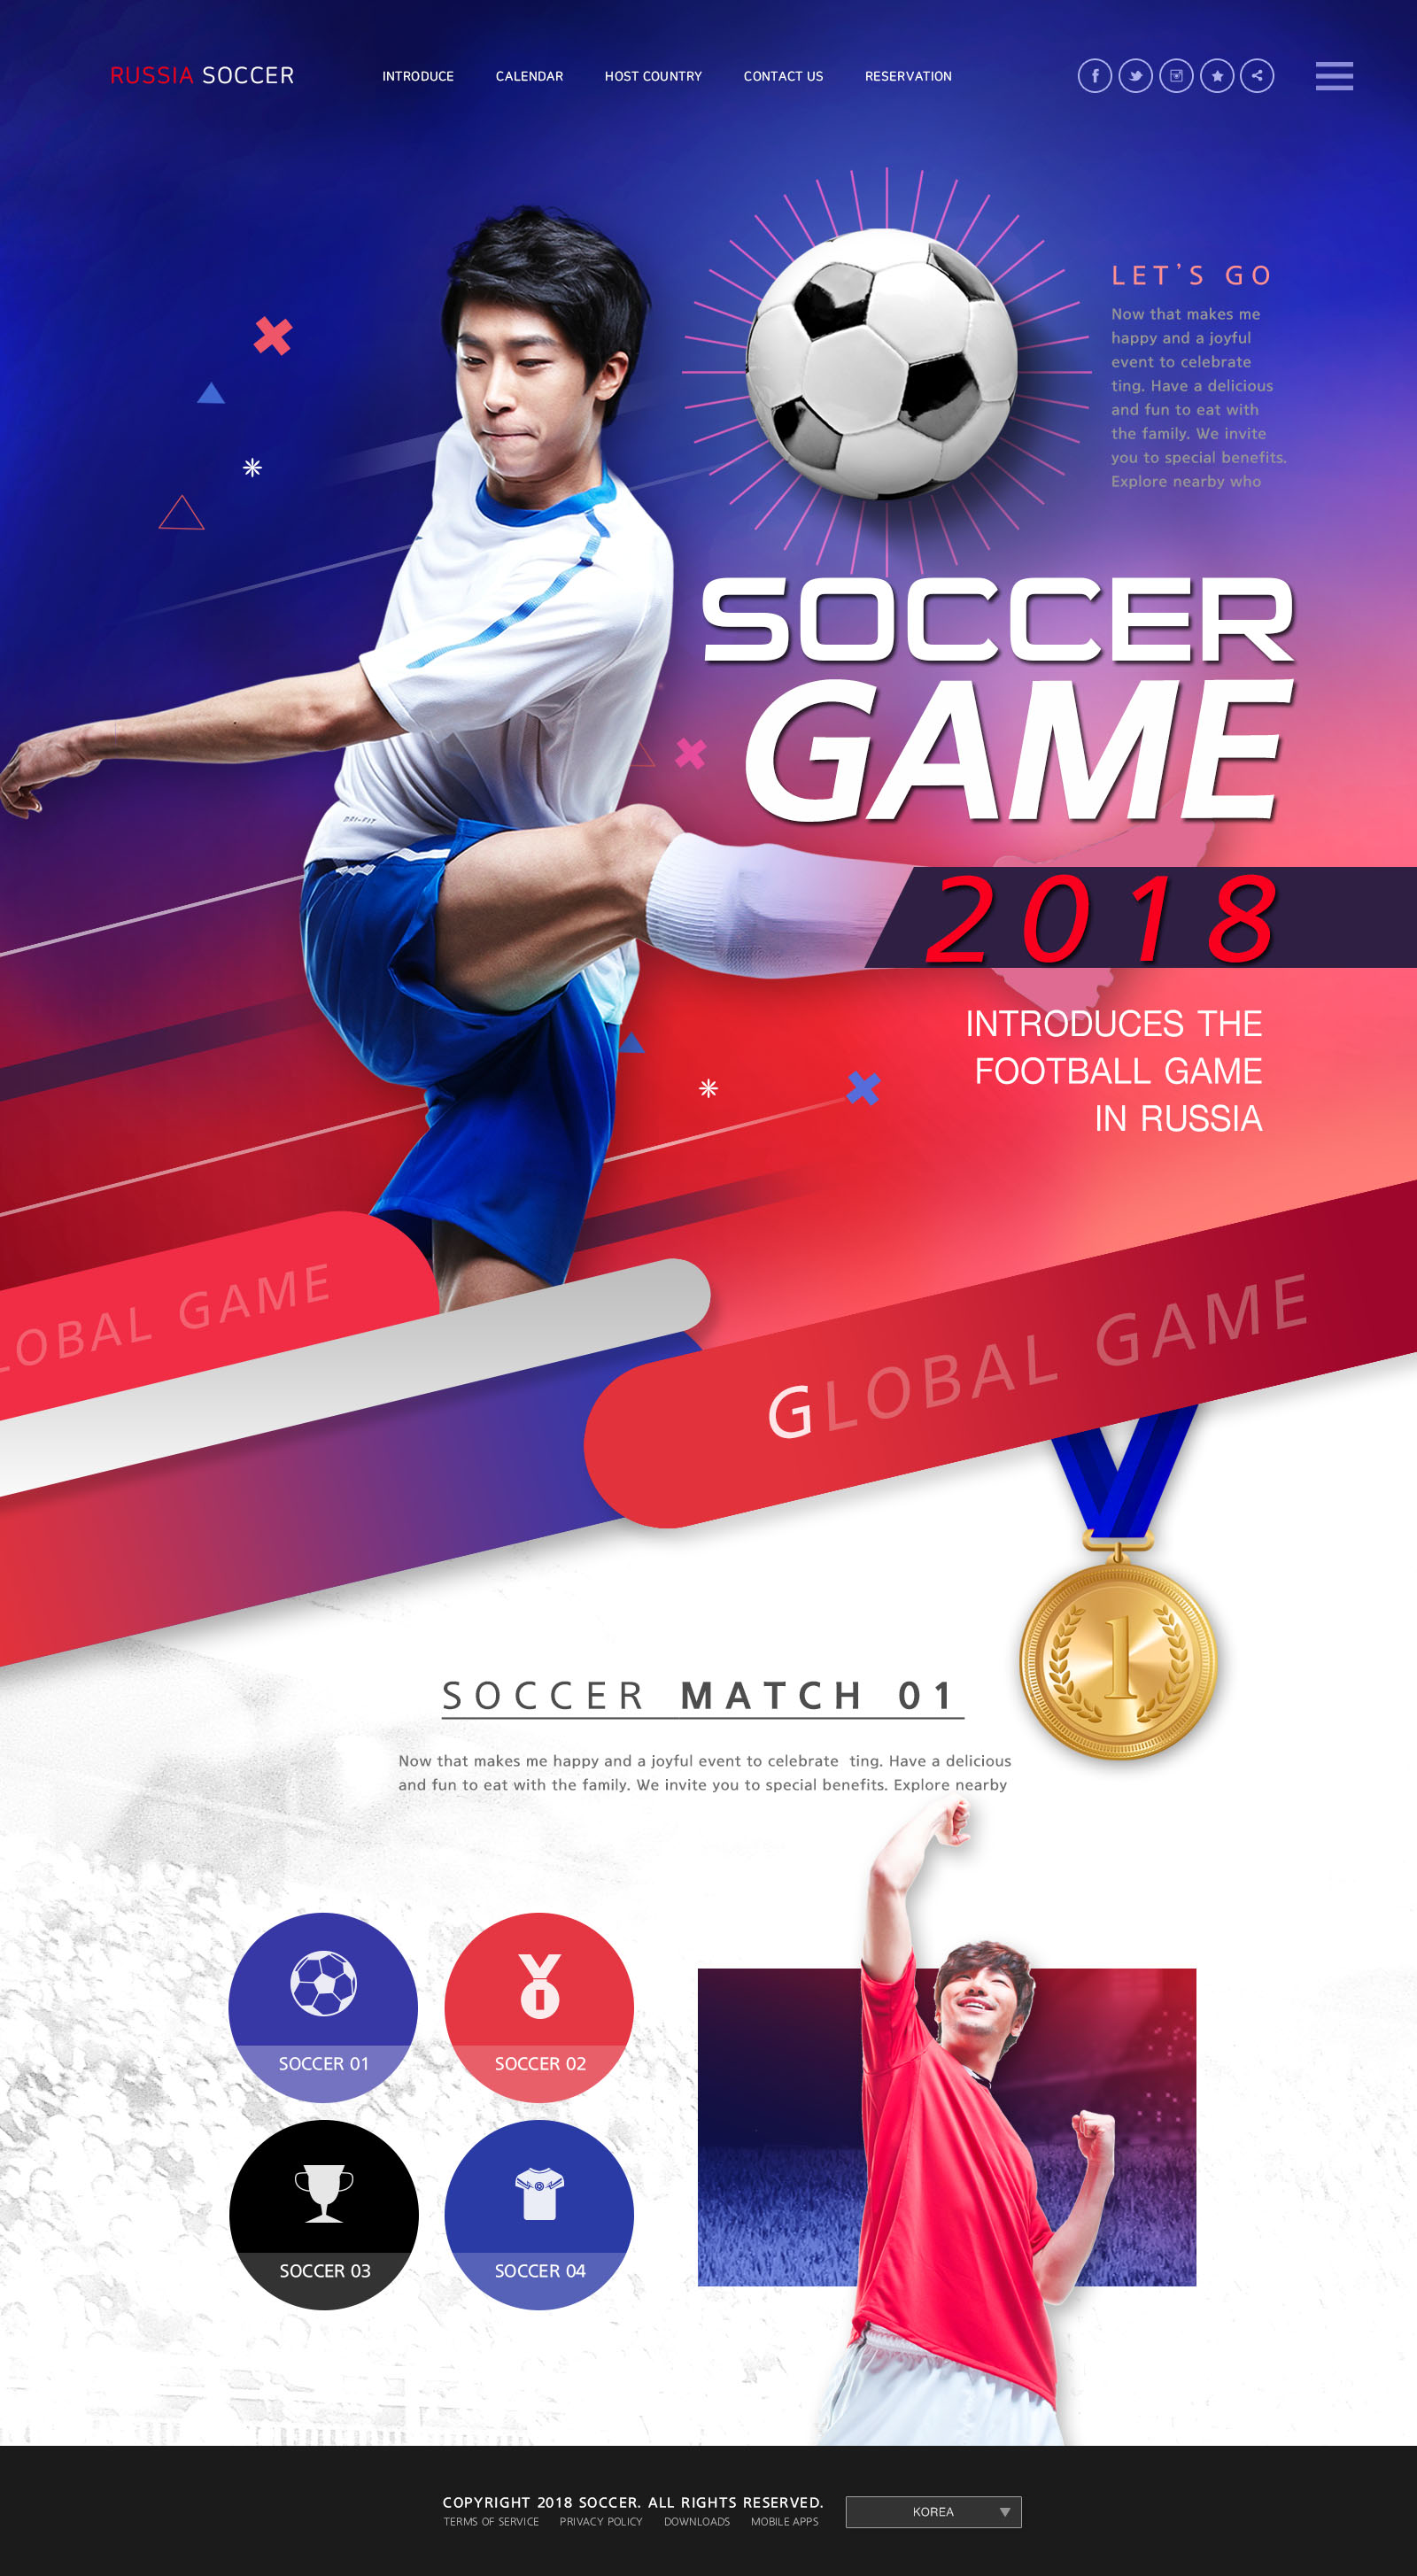 世界杯足球专题广告设计PSD模板蚂蚁素材精选(韩国风格)插图(1)